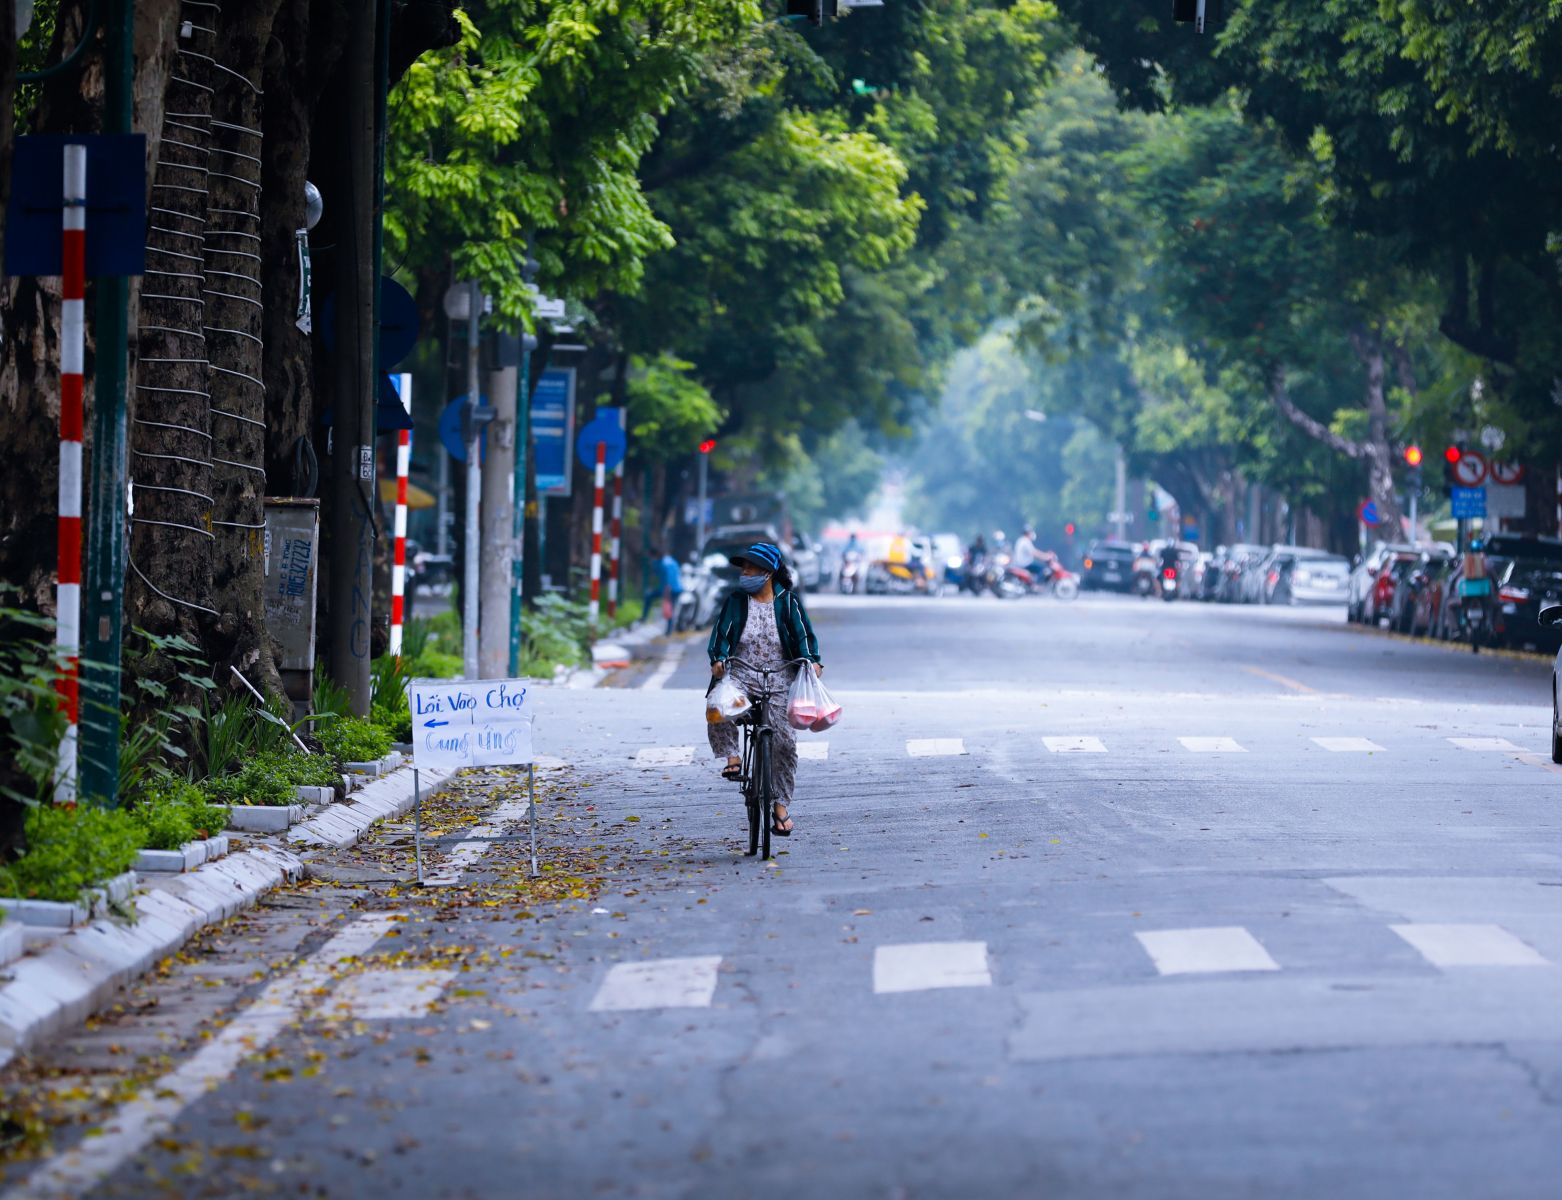 Có những con phố đông đúc của Hà Nội ngày thường như Trần Hưng Đạo trở nên thưa vắng người qua lại. Có một Hà Nội trầm lắng hơn và cảm giác như đang trở lại cuộc sống của thập niên 90, của thế kỷ trước.